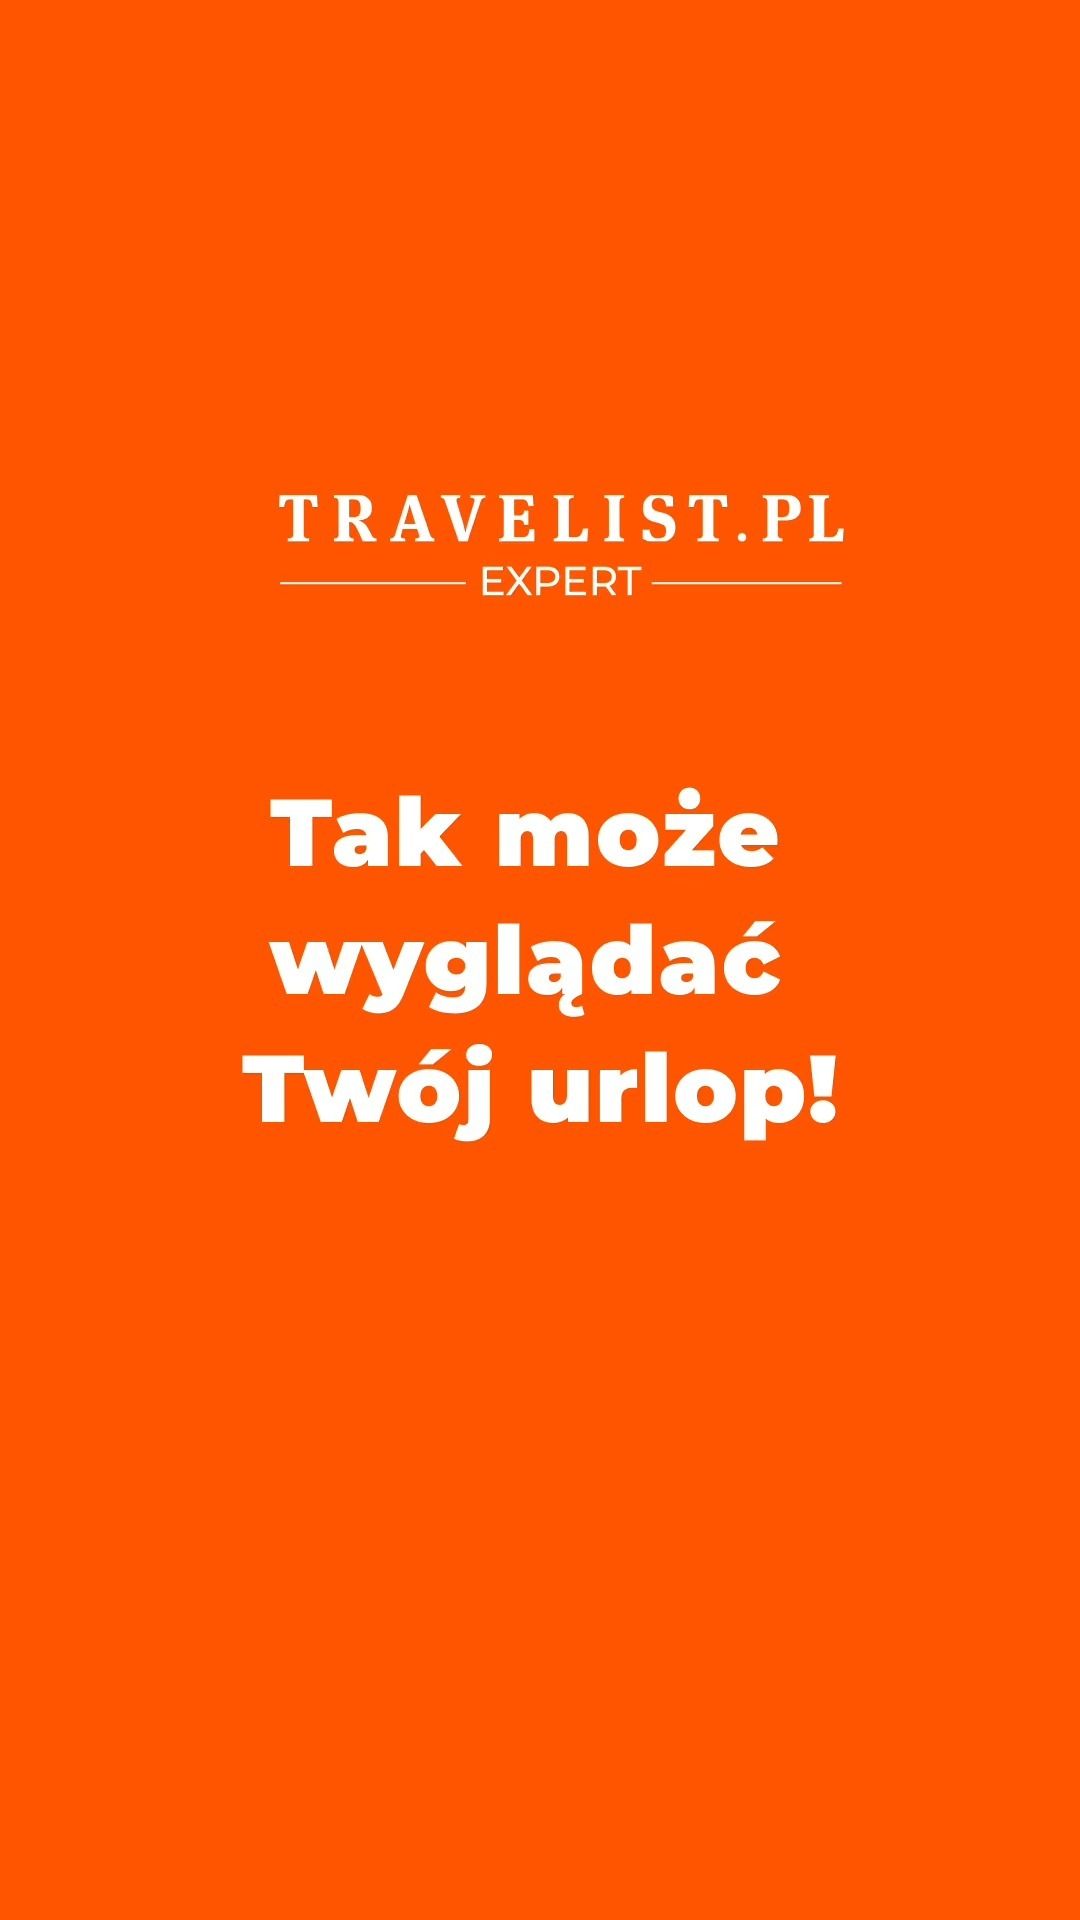 Nasz Ekspert Michał — Account Manager — wynegocjował specjalnie na tę akcję dodatkowe zniżki oraz pobyt 2 dzieci GRATIS (do lat 4 i 12). Ale tylko na chwilę, więc spiesz się!  Link w BIO @Travelist.pl. Przejdź na profil i kliknij w klikalny link. Następnie kliknij miniaturę tej rolki i zostaniesz przekierowan_ na stronę oferty tego hotelu 😊  #TravelistEkspert #MagazynTravelist #GwarancjaNajlepszejCenyzTravelist #hotele #zniżki